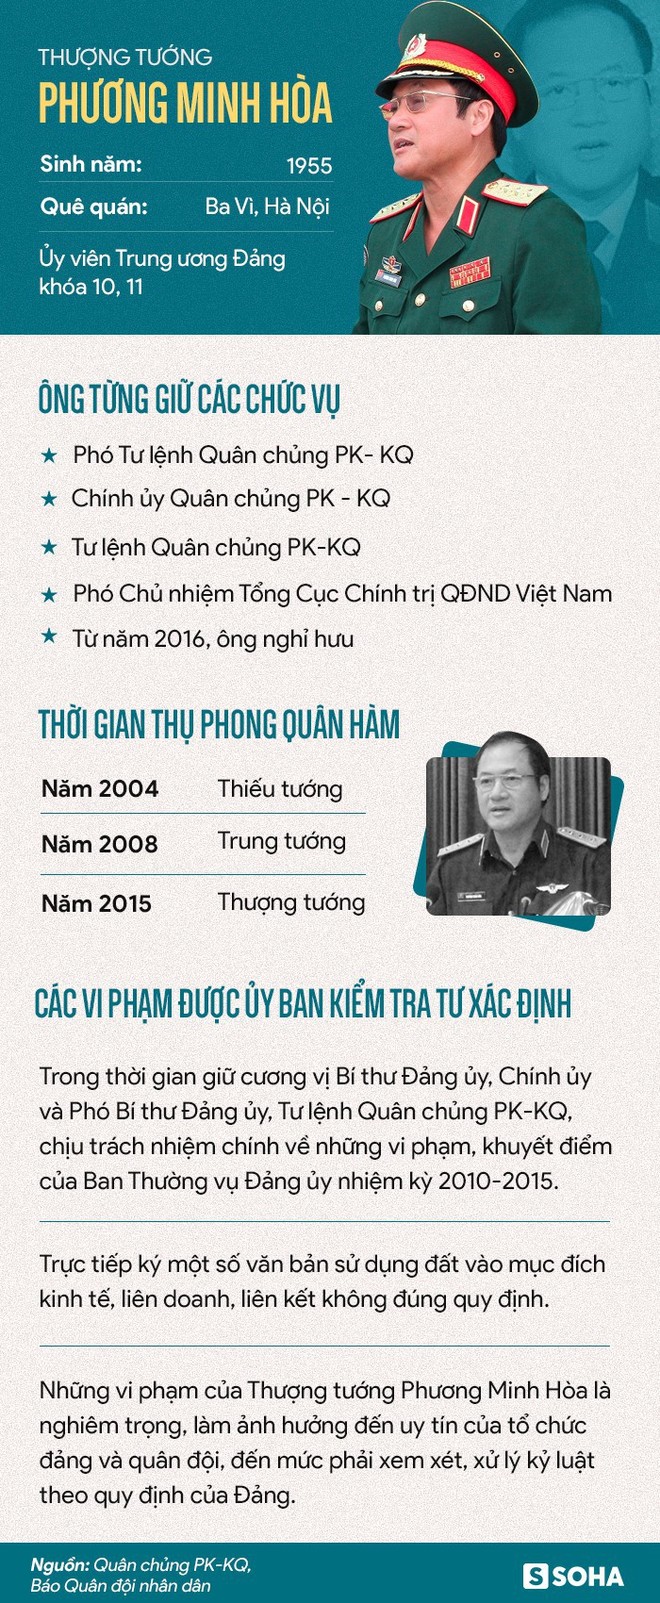 Ban Bí thư kỷ luật cảnh cáo Thượng tướng Phương Minh Hòa vì vi phạm nghiêm trọng - Ảnh 3.